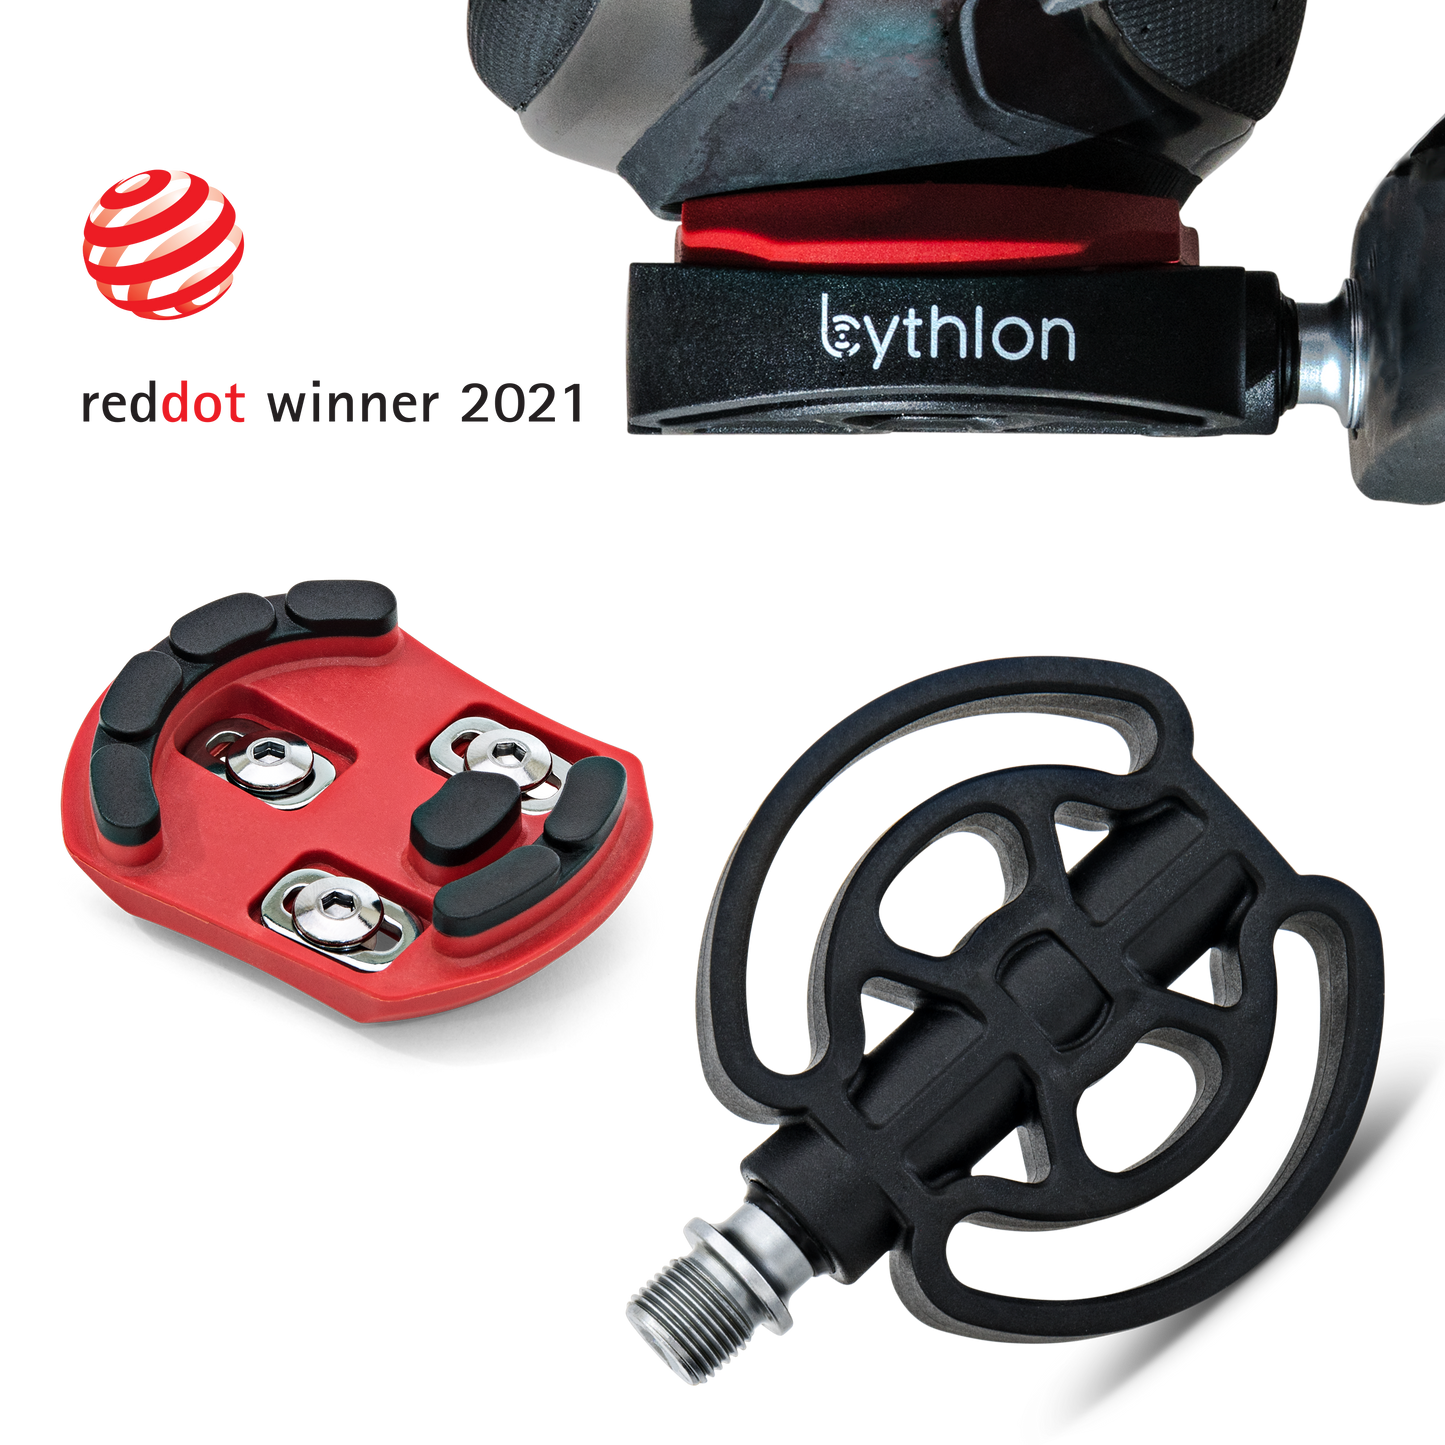 Bythlon Safety Pedal System